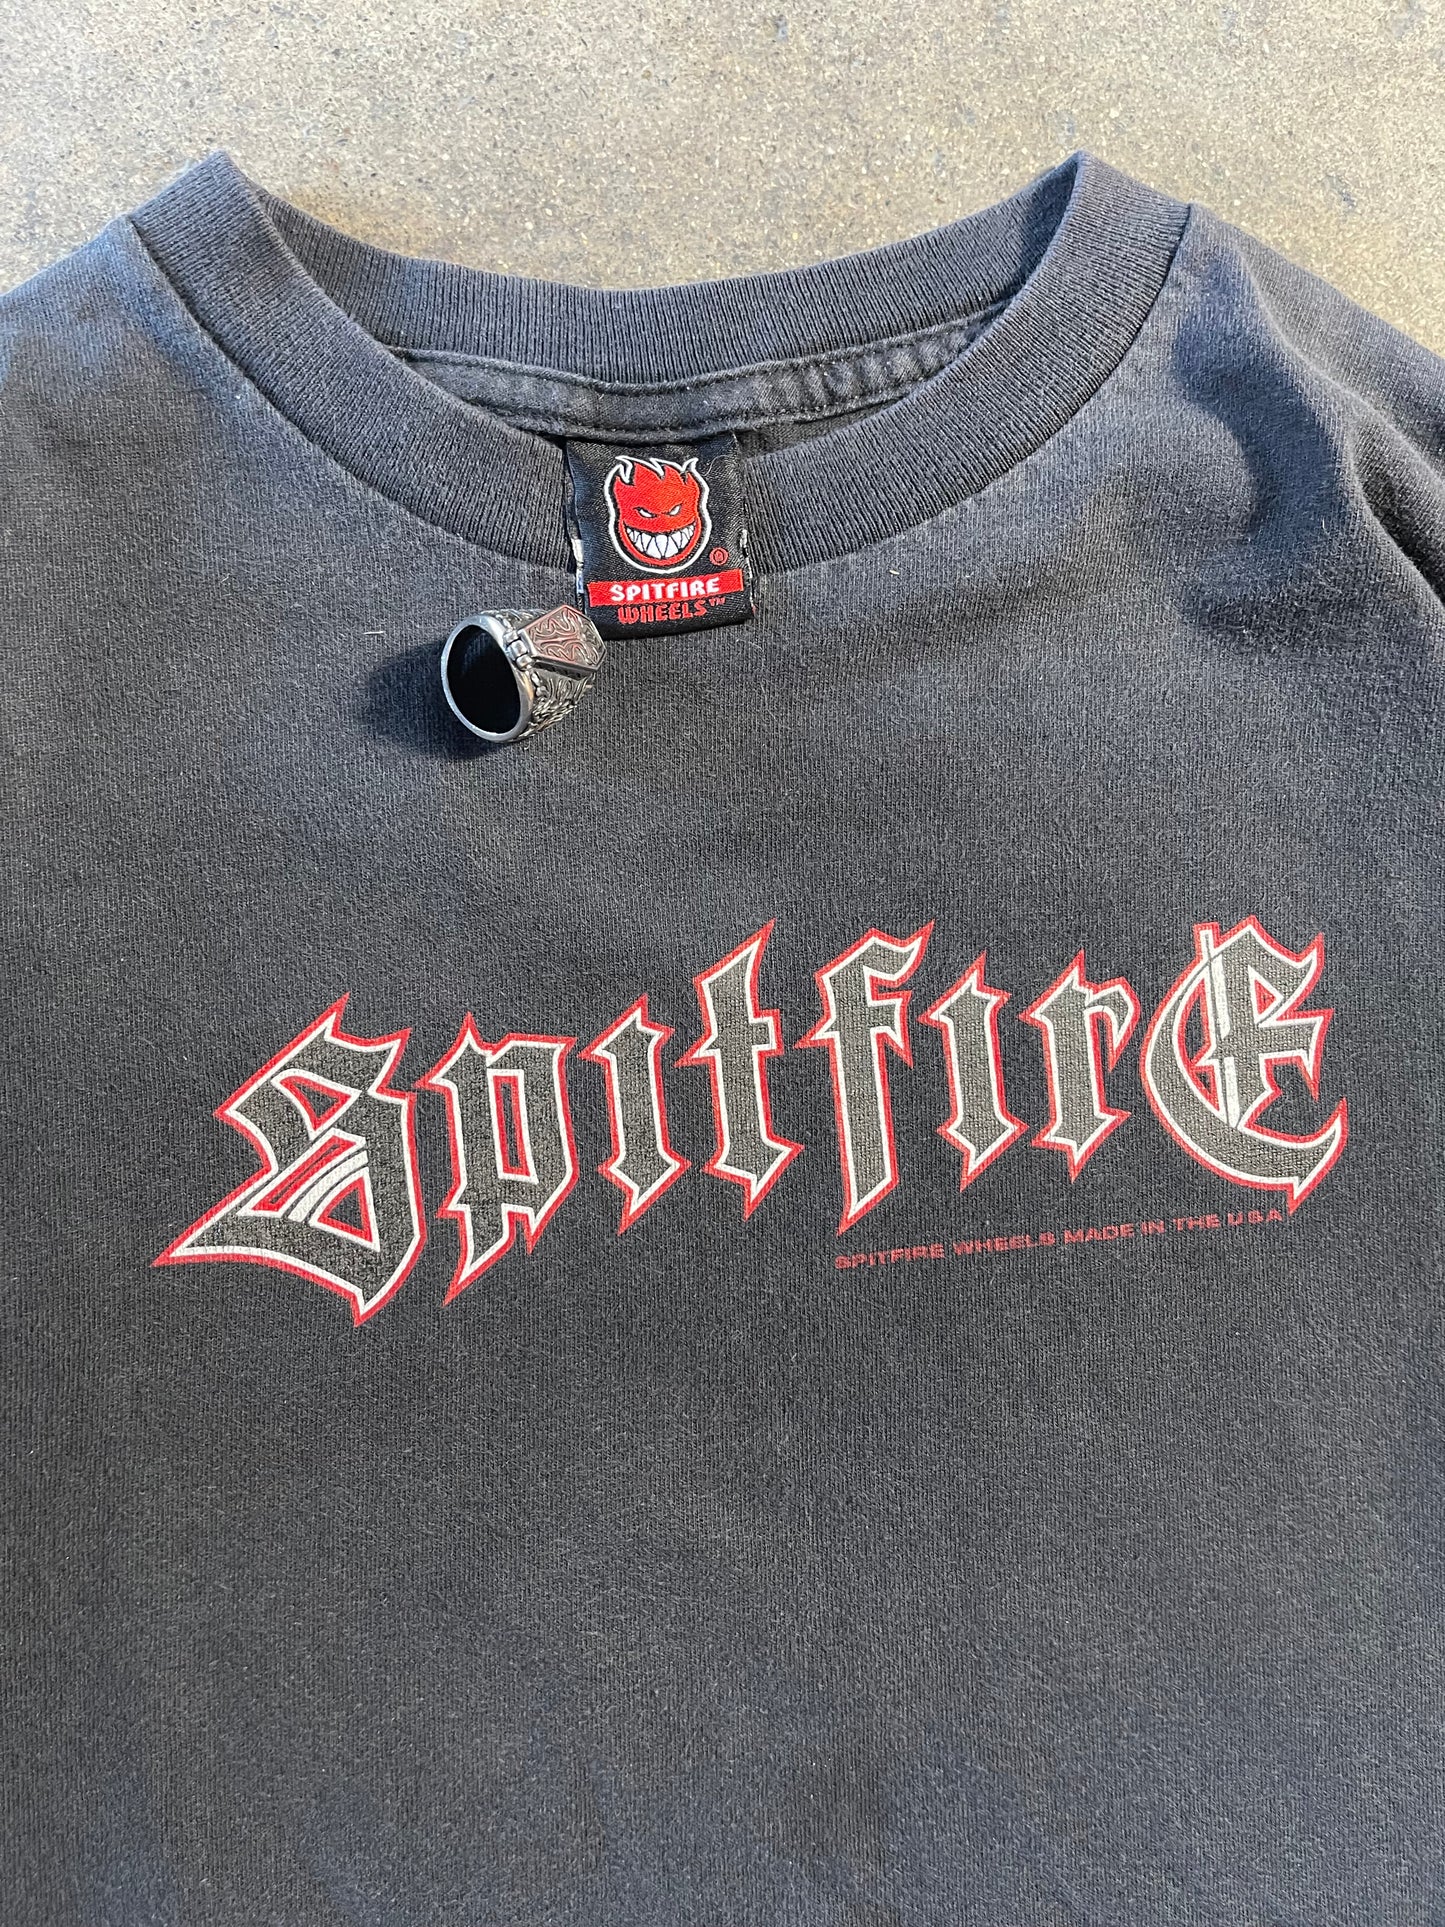 Vintage Spitfire Long Sleeve Shirt L